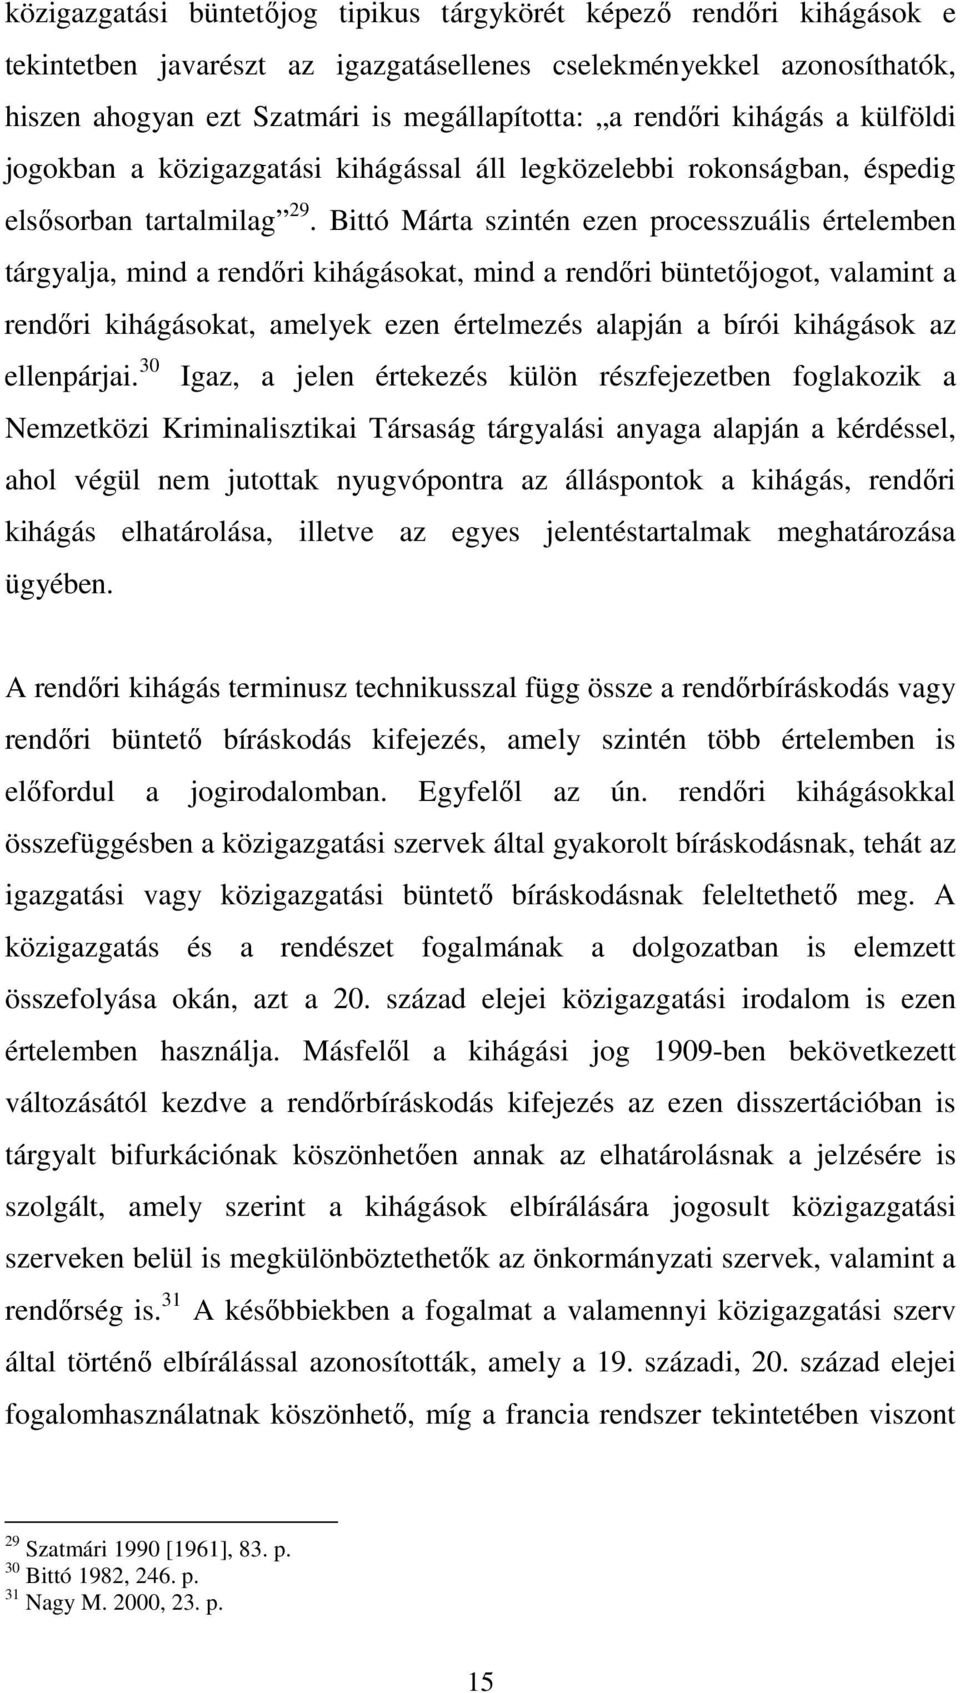 Bittó Márta szintén ezen processzuális értelemben tárgyalja, mind a rendıri kihágásokat, mind a rendıri büntetıjogot, valamint a rendıri kihágásokat, amelyek ezen értelmezés alapján a bírói kihágások